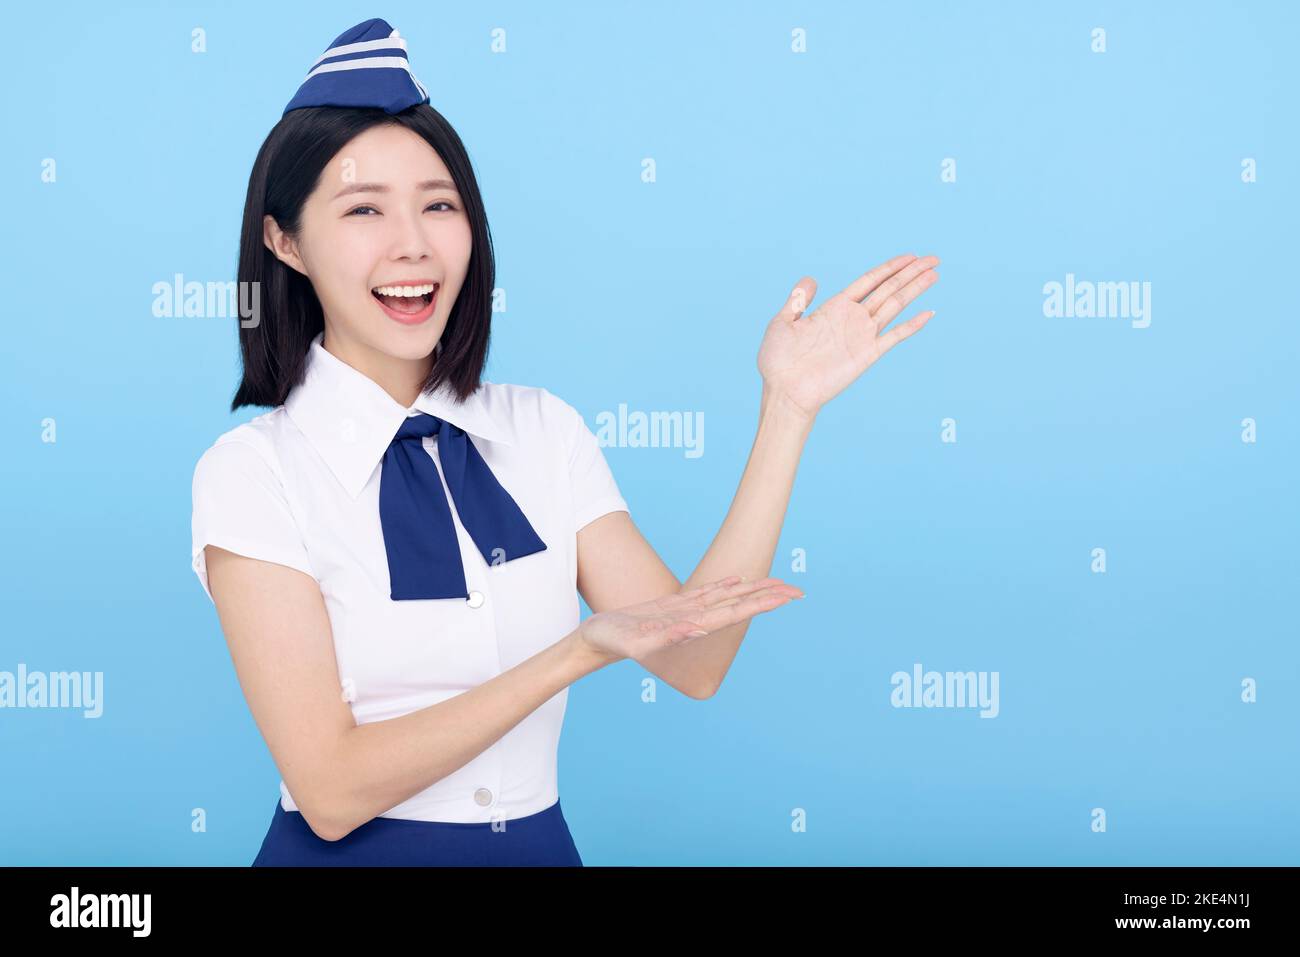 Beautiful stewardess showing something on blue background Stock Photo